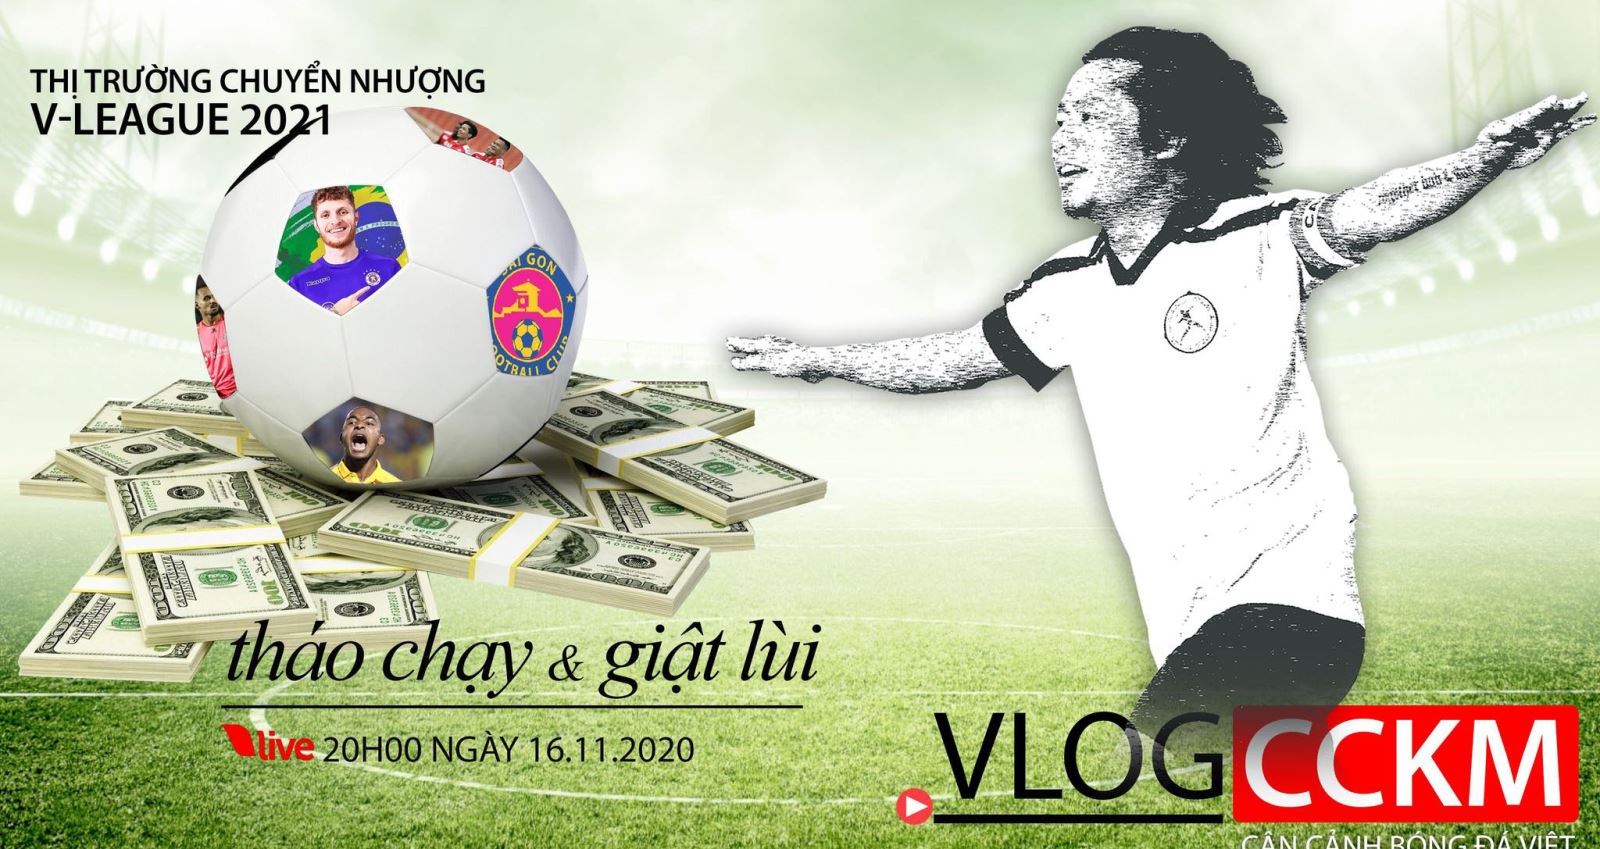 CCKM, bóng đá, bong da, Sài Gòn FC, trần hải, V-League, lịch thi đấu, Vlog CCKM